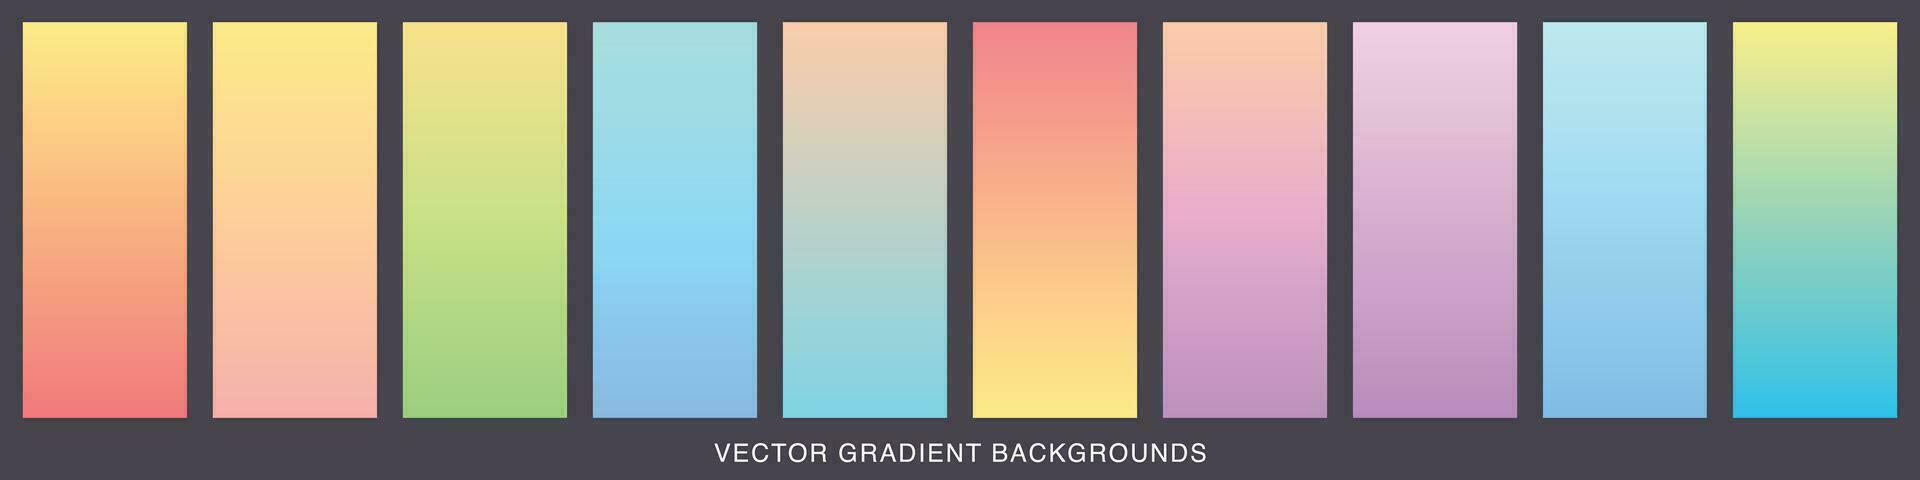 verzameling van kleurrijk glad helling achtergrond voor grafisch ontwerp. zacht kleur modern scherm vector ontwerp voor mobiel app. blauw, groente, turkoois, helder, rood, geel, abstract. eps 10.